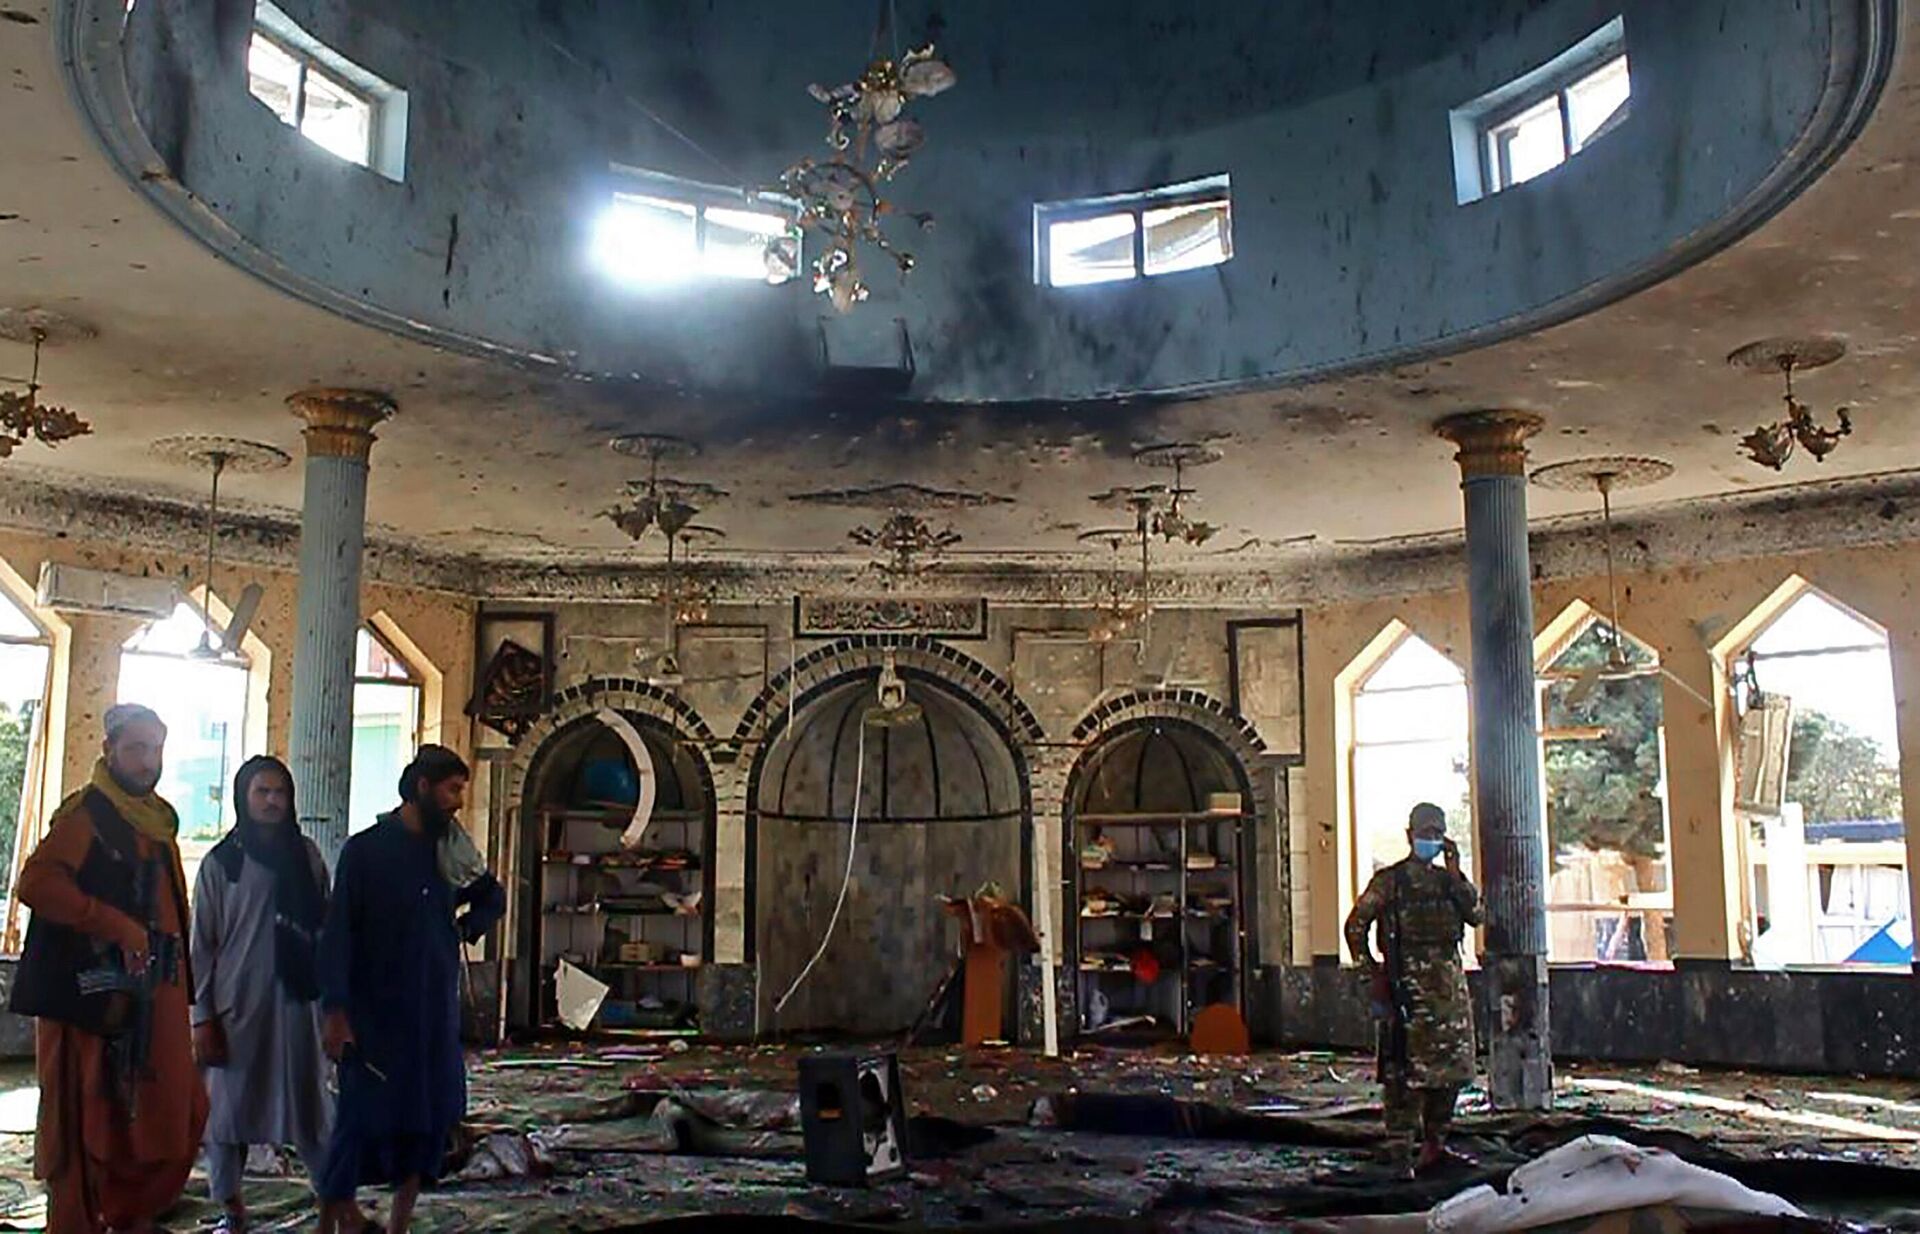 Теракт во время пятничной молитвы в афганском городе Кундуз - Sputnik Ўзбекистон, 1920, 09.10.2021